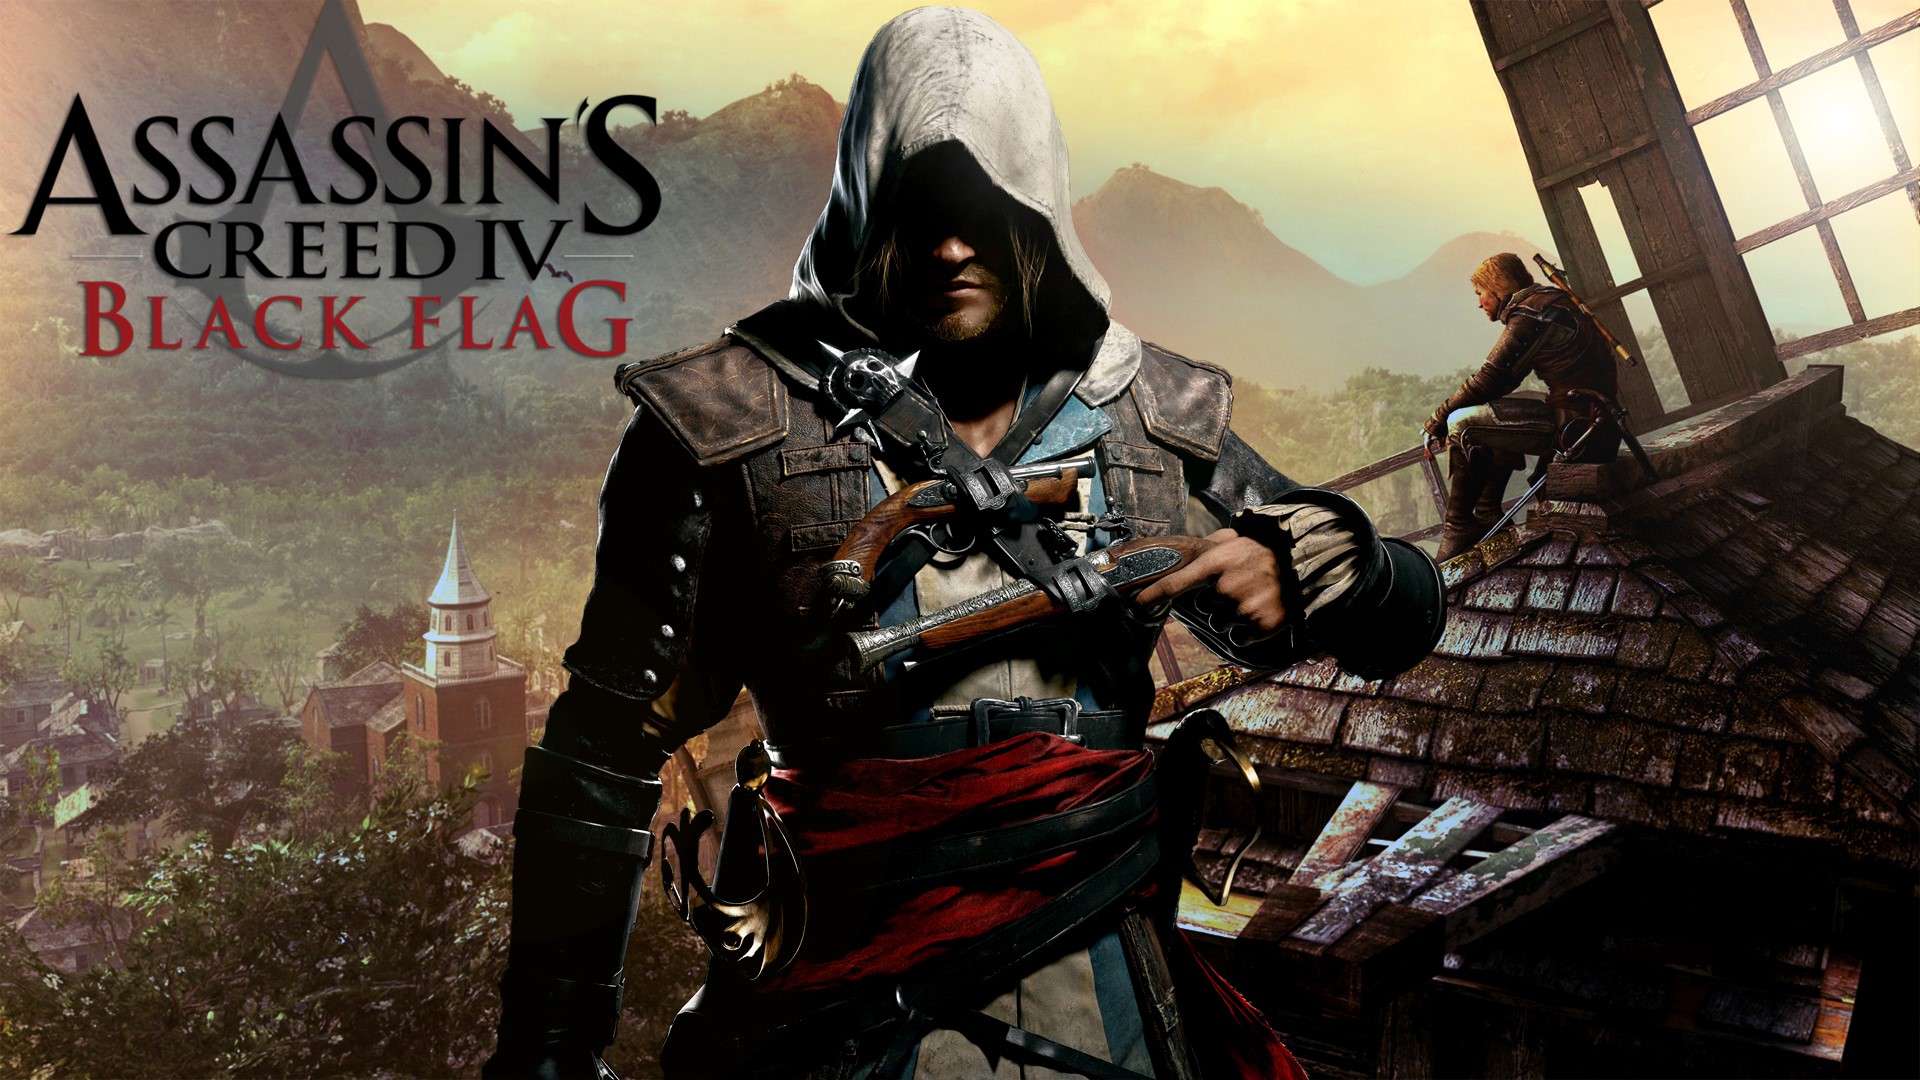 Ассасин крид купить стим. Ассасин Крид 4 черный флаг. Assassin’s Creed IV: Black Flag – 2013. Ассасин Крид Блэк флаг игра. Assassin's Creed 4 Black Flag обложка.